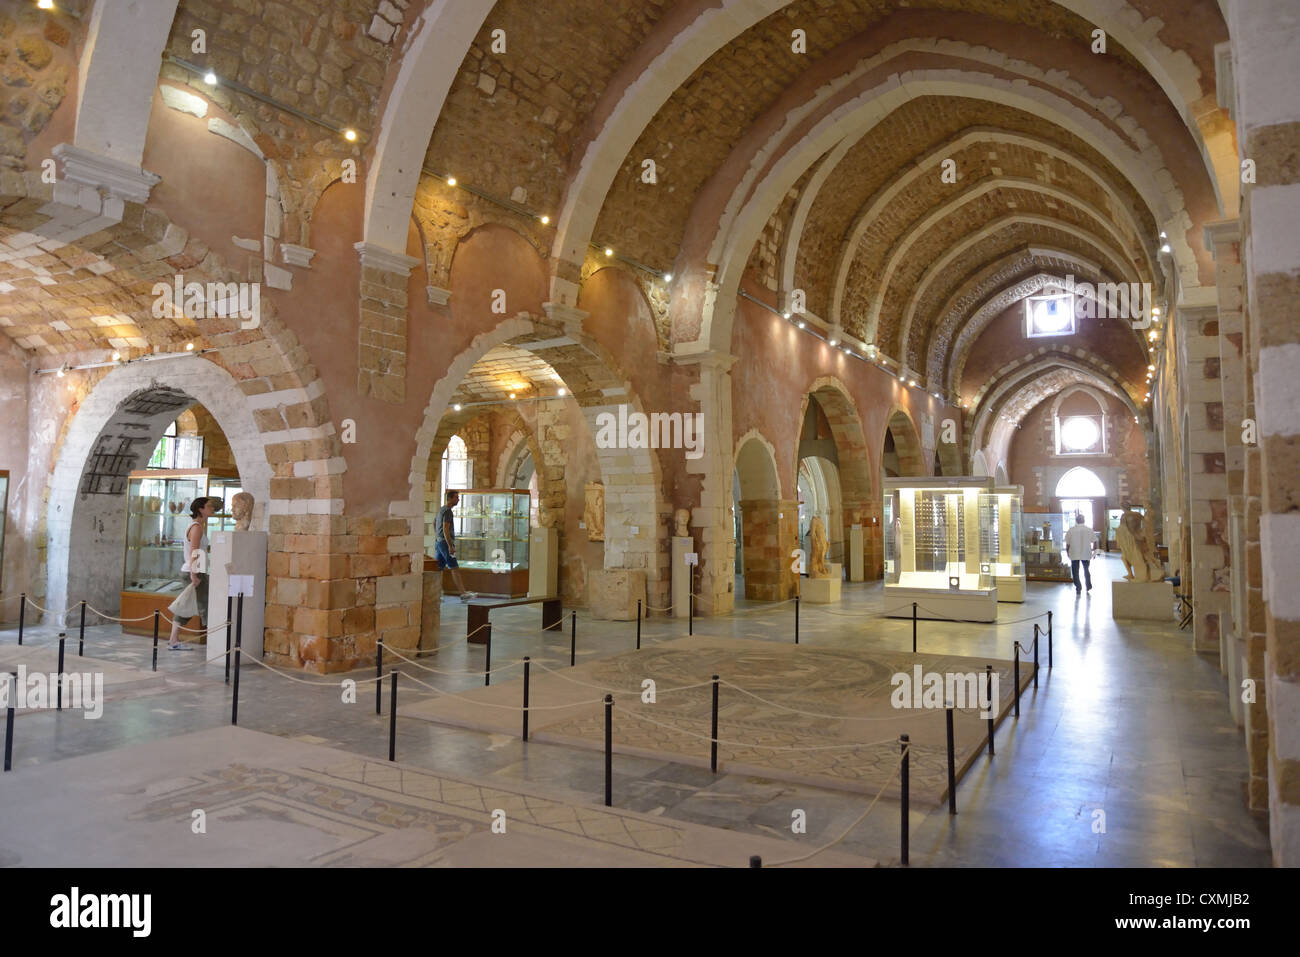 Le Musée archéologique de La Canée, dans l'ancien monastère de Saint Francis, Chania, Chania, Crete, Crete Région Région, Grèce Banque D'Images